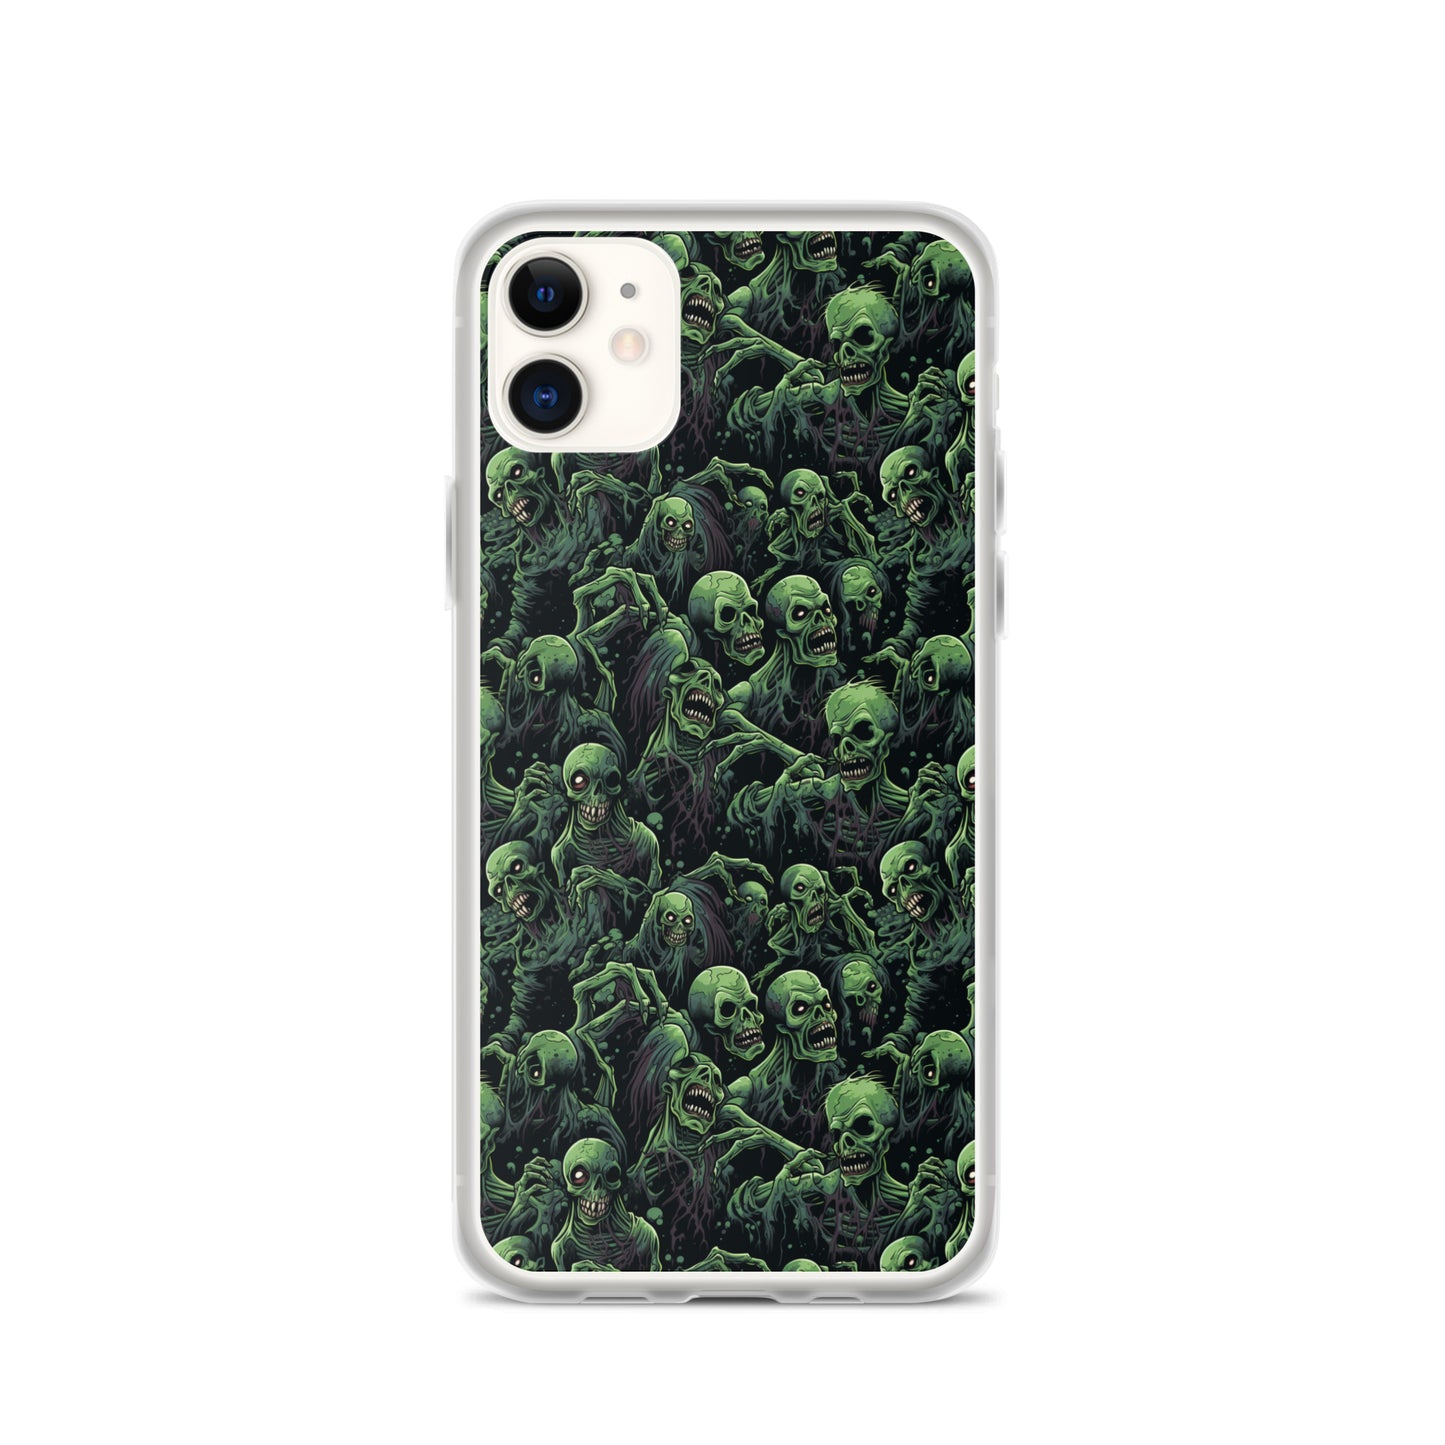 iPhone Case - Zombie Horror